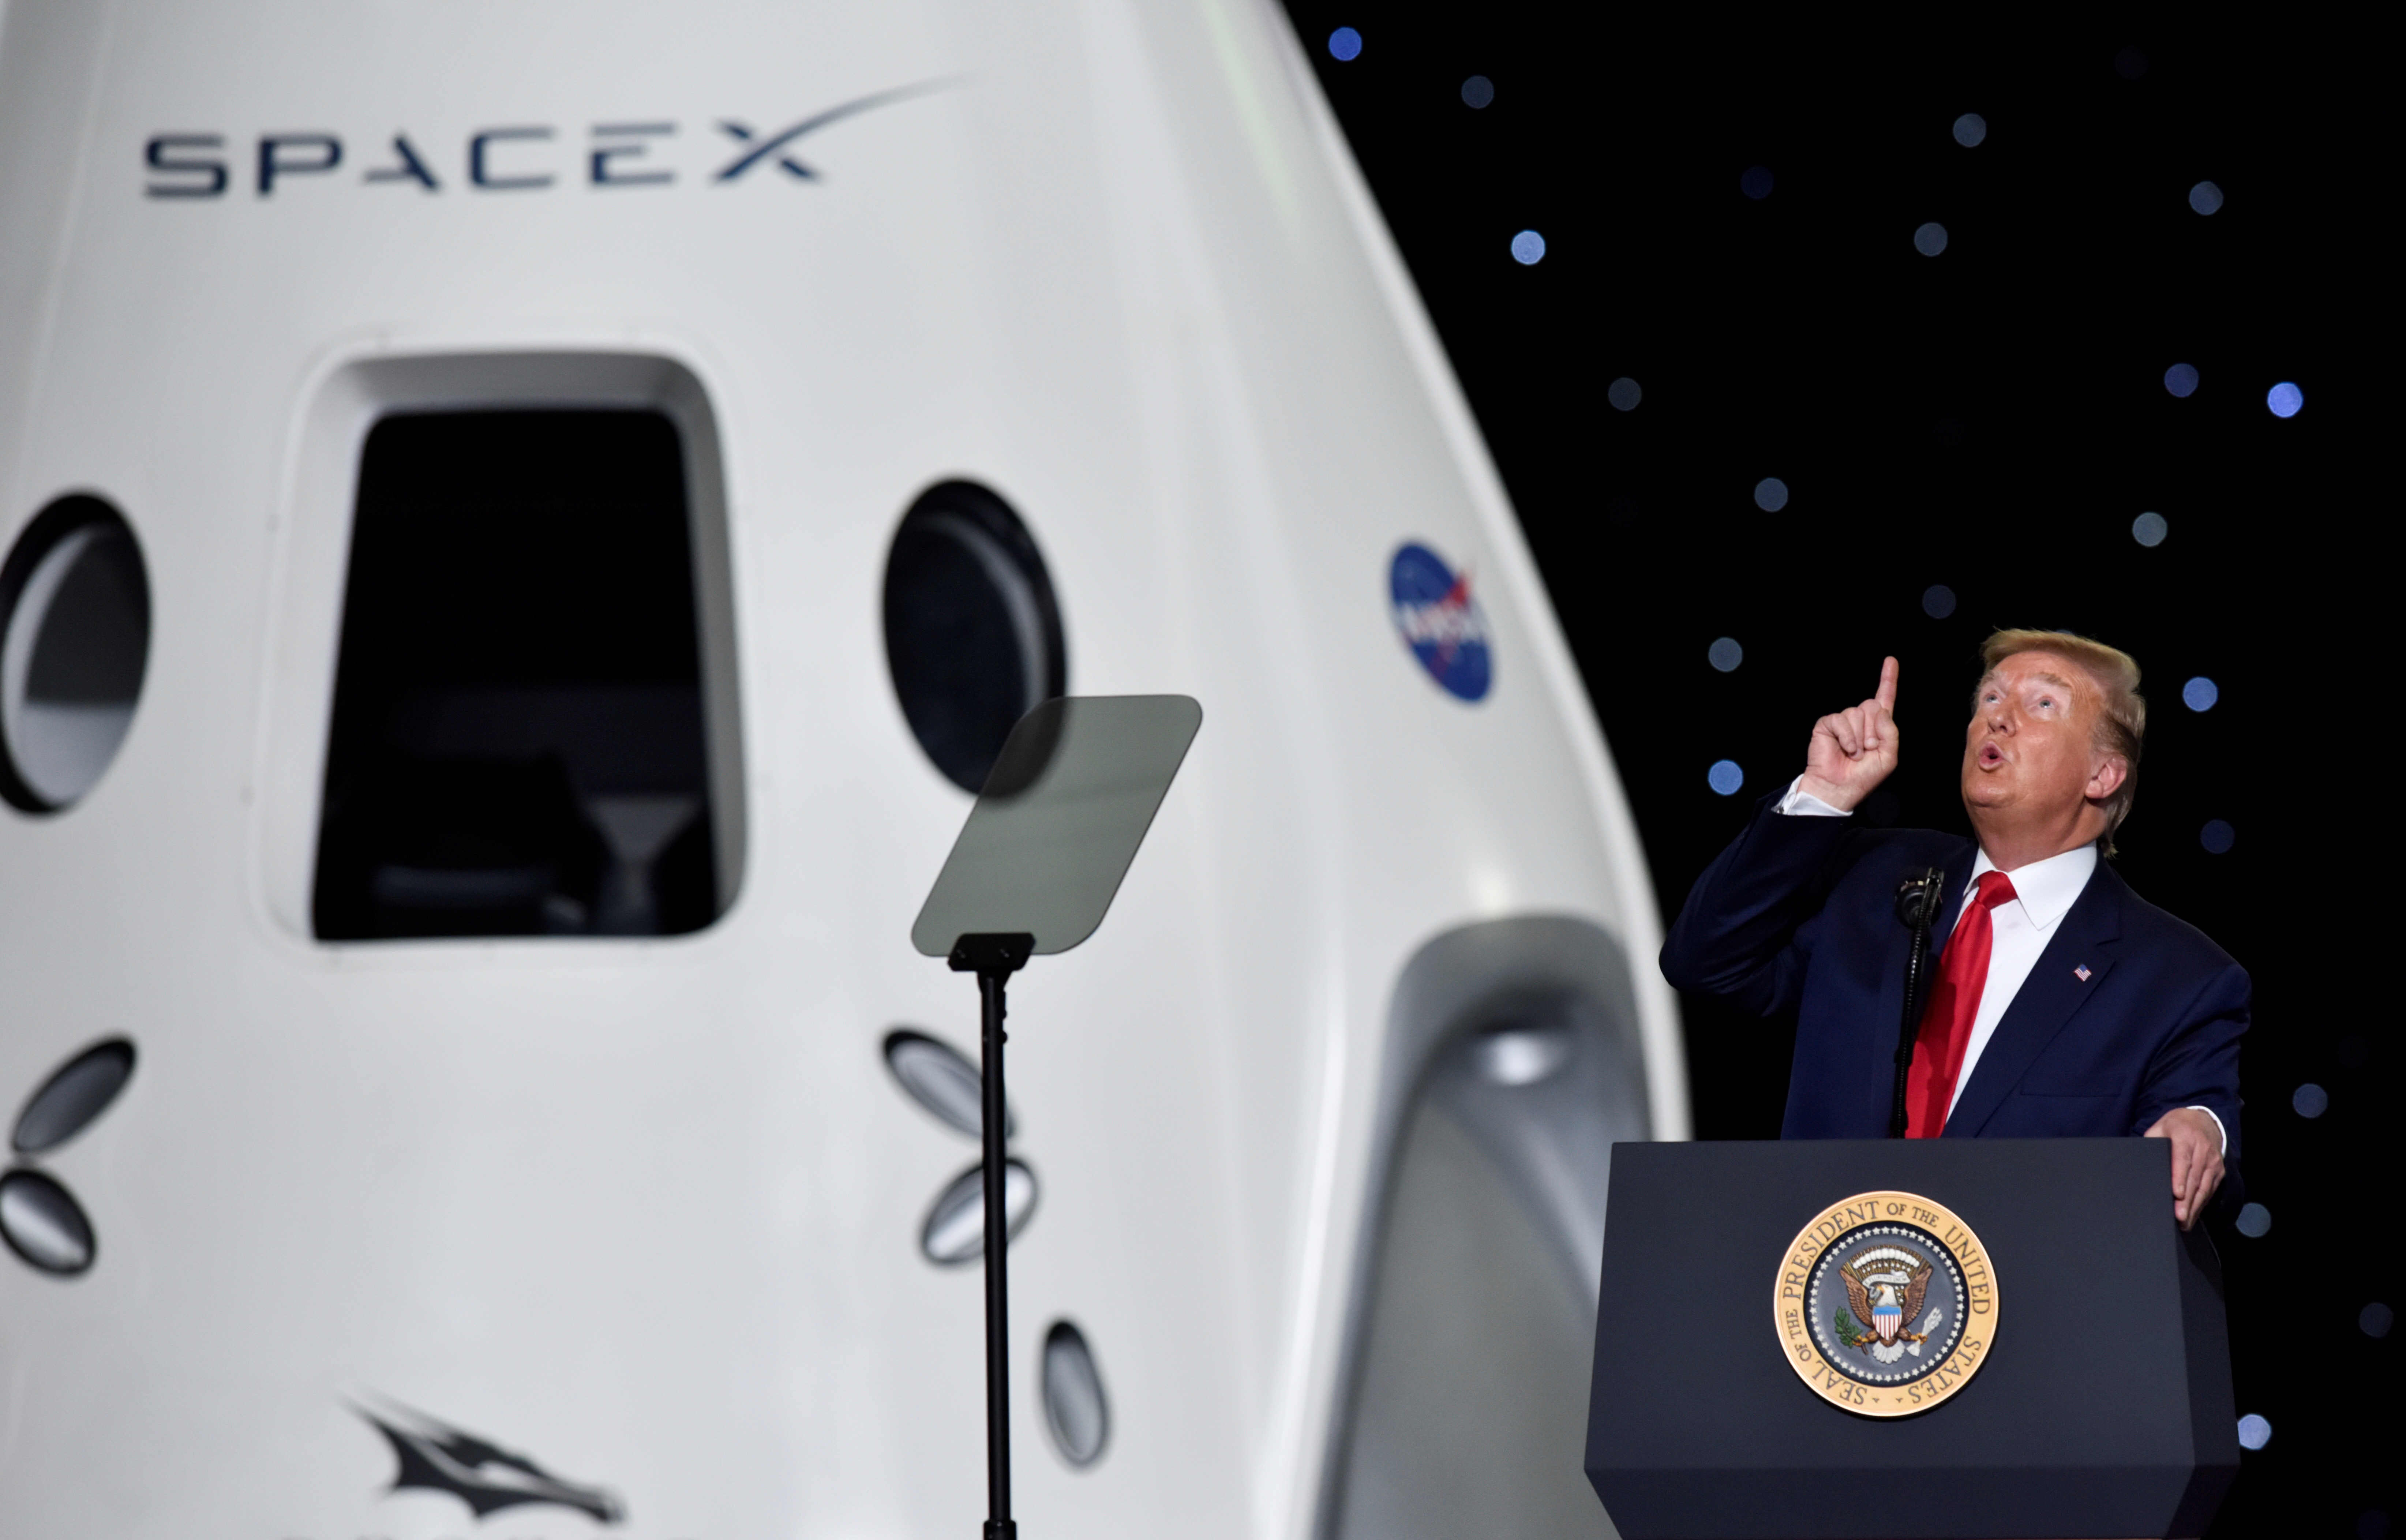 Trump pometió que este es solo el comienzo y prometió que los EEUU regresarán a la Luna